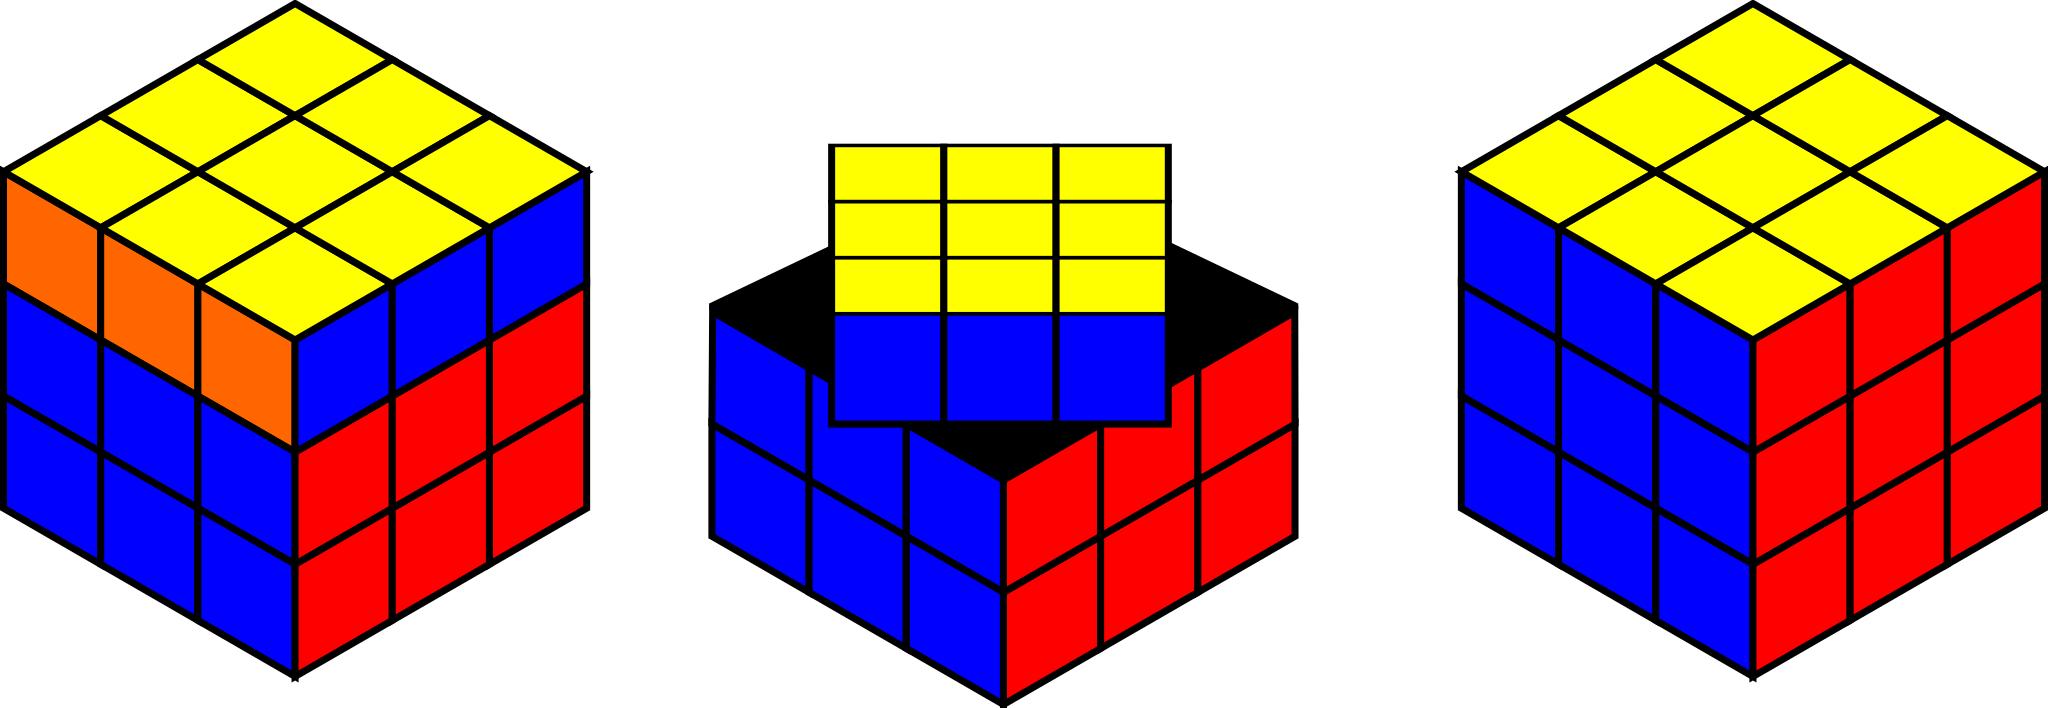 Рисунок головоломки Рубика